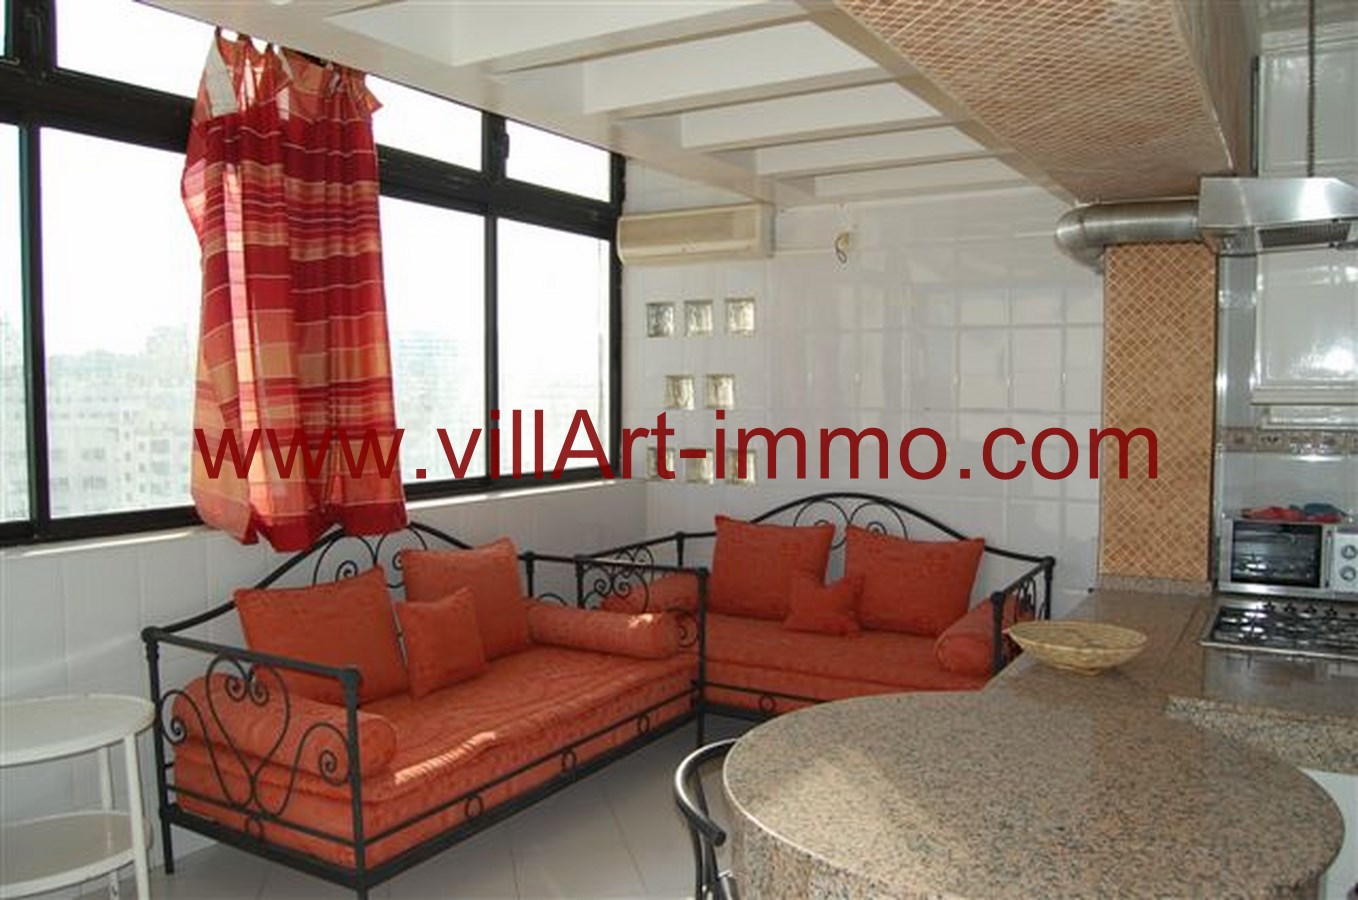 4-Location-Appartement-Tanger-Meublé-Coin salle à manger-L728-Villart immo